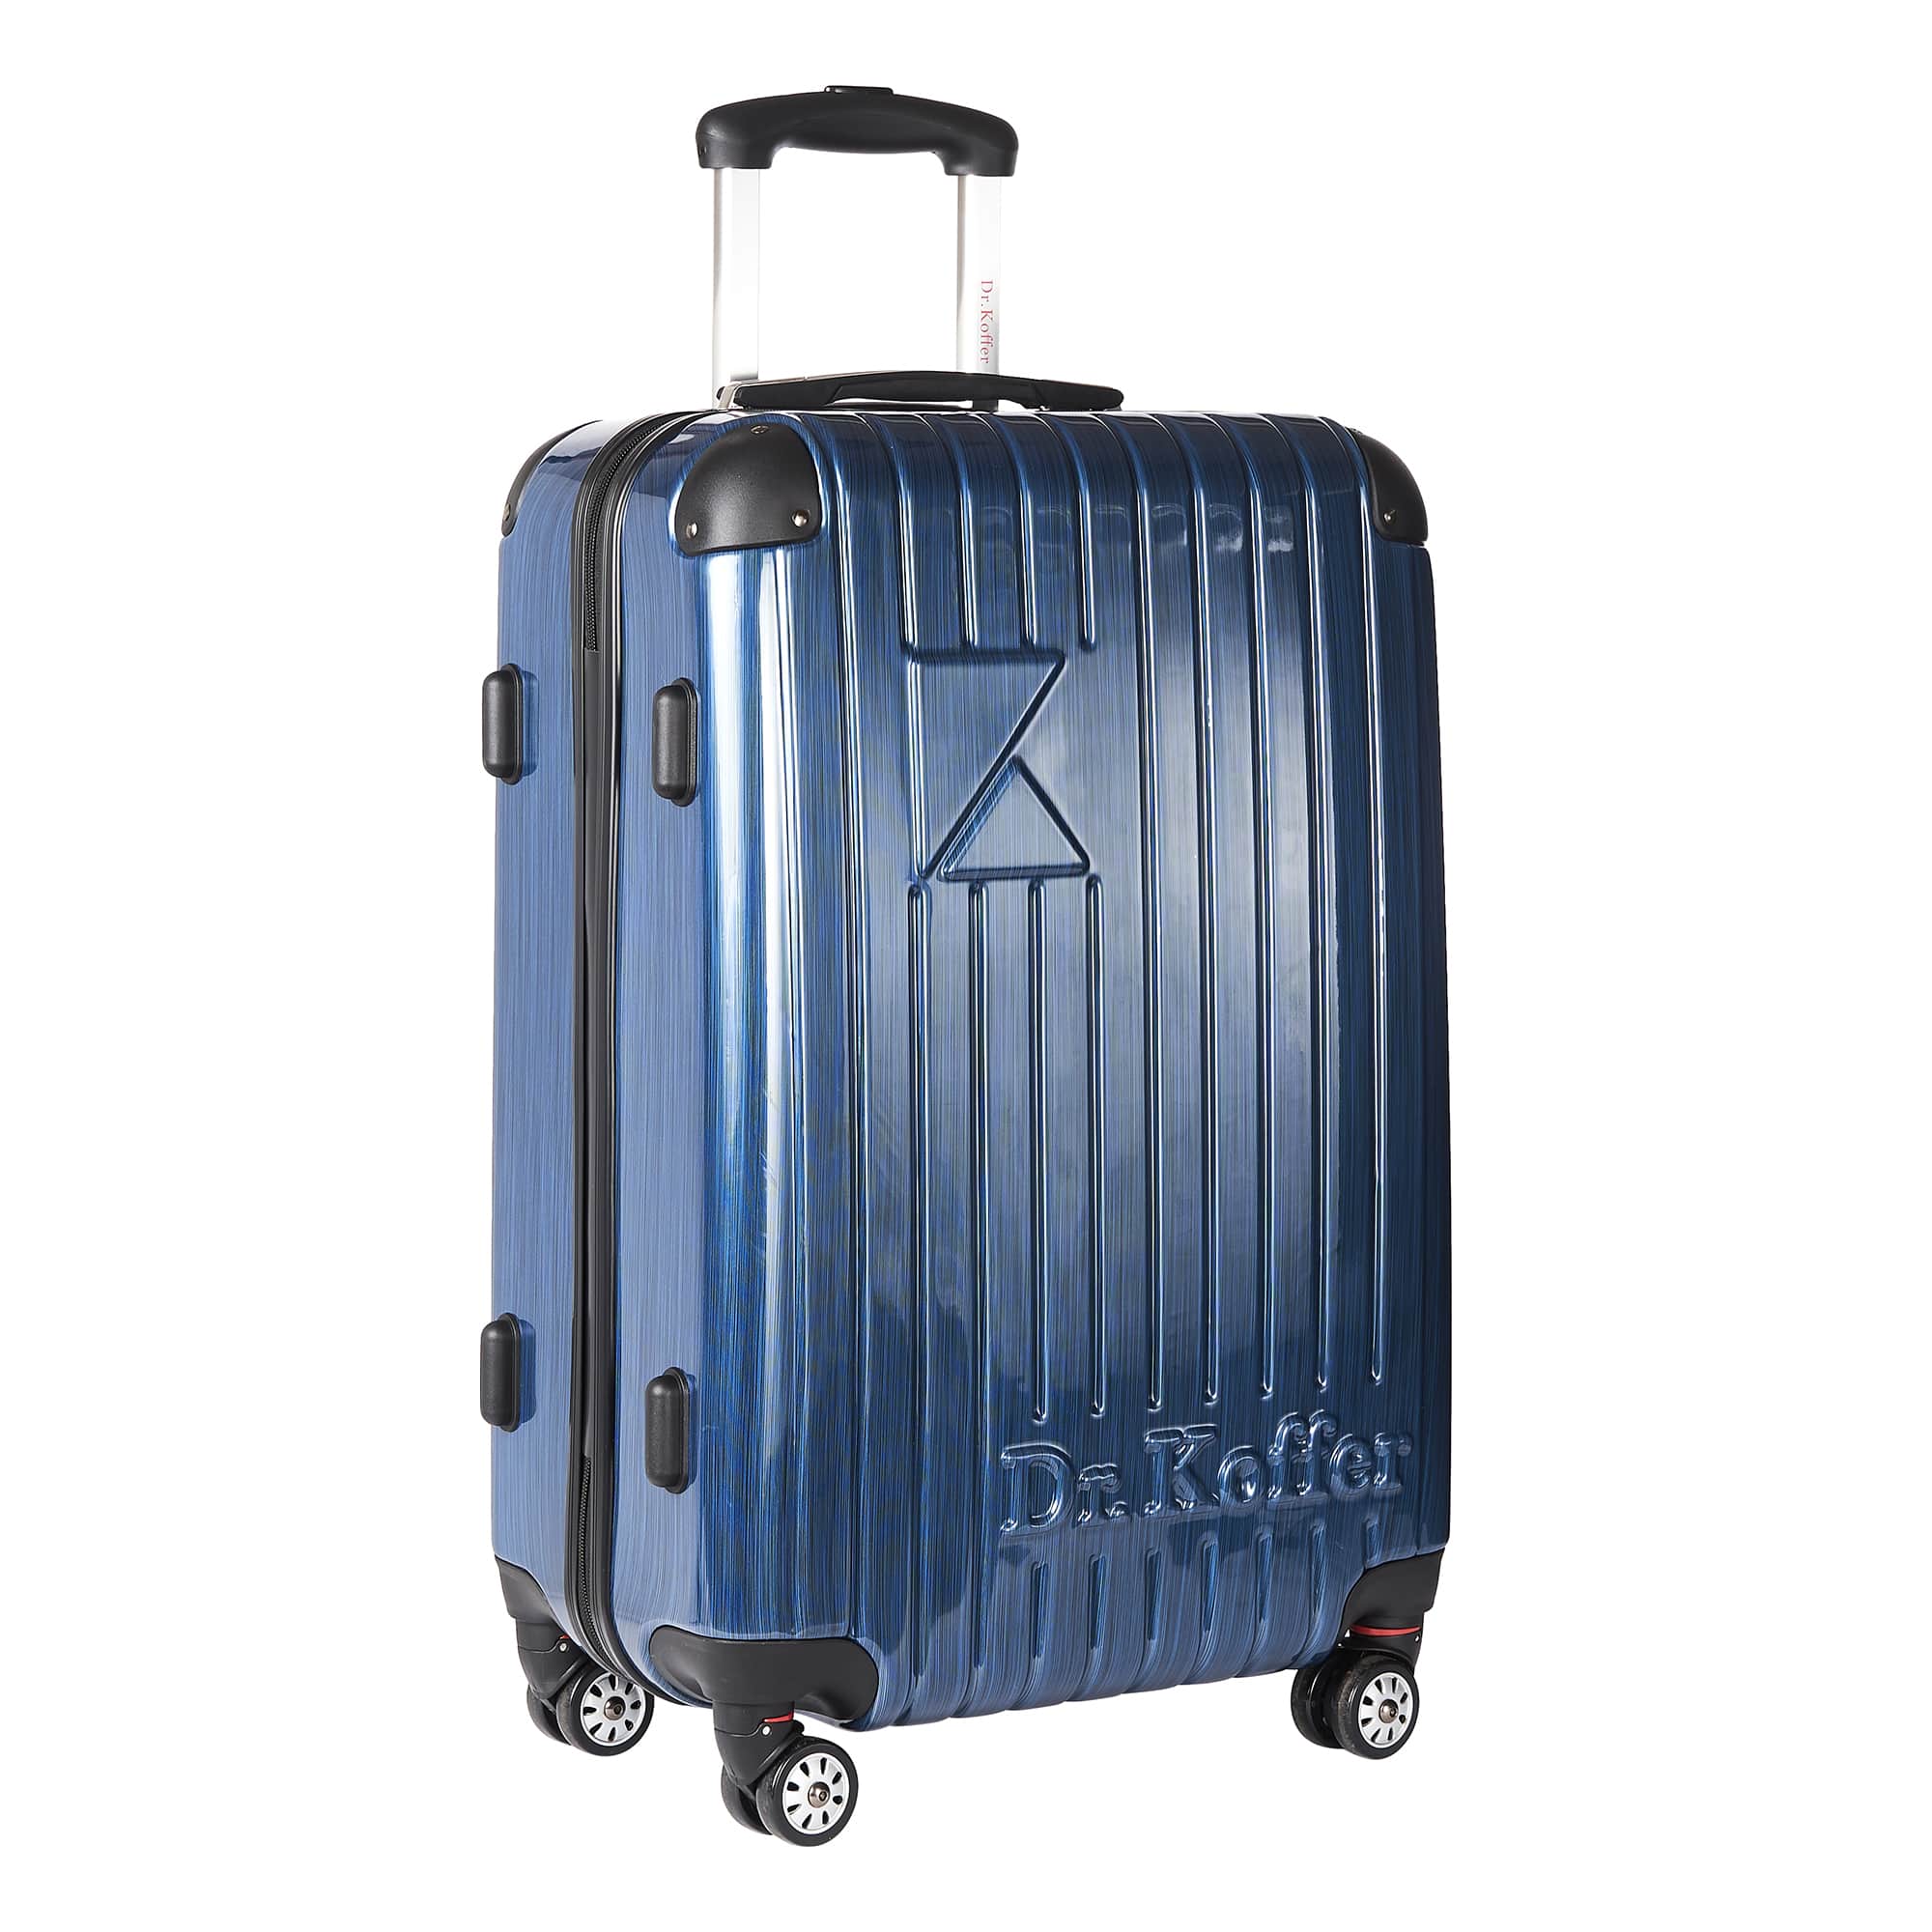 Др.Коффер L102TC28-250-60 чемодан, цвет синий - фото 1